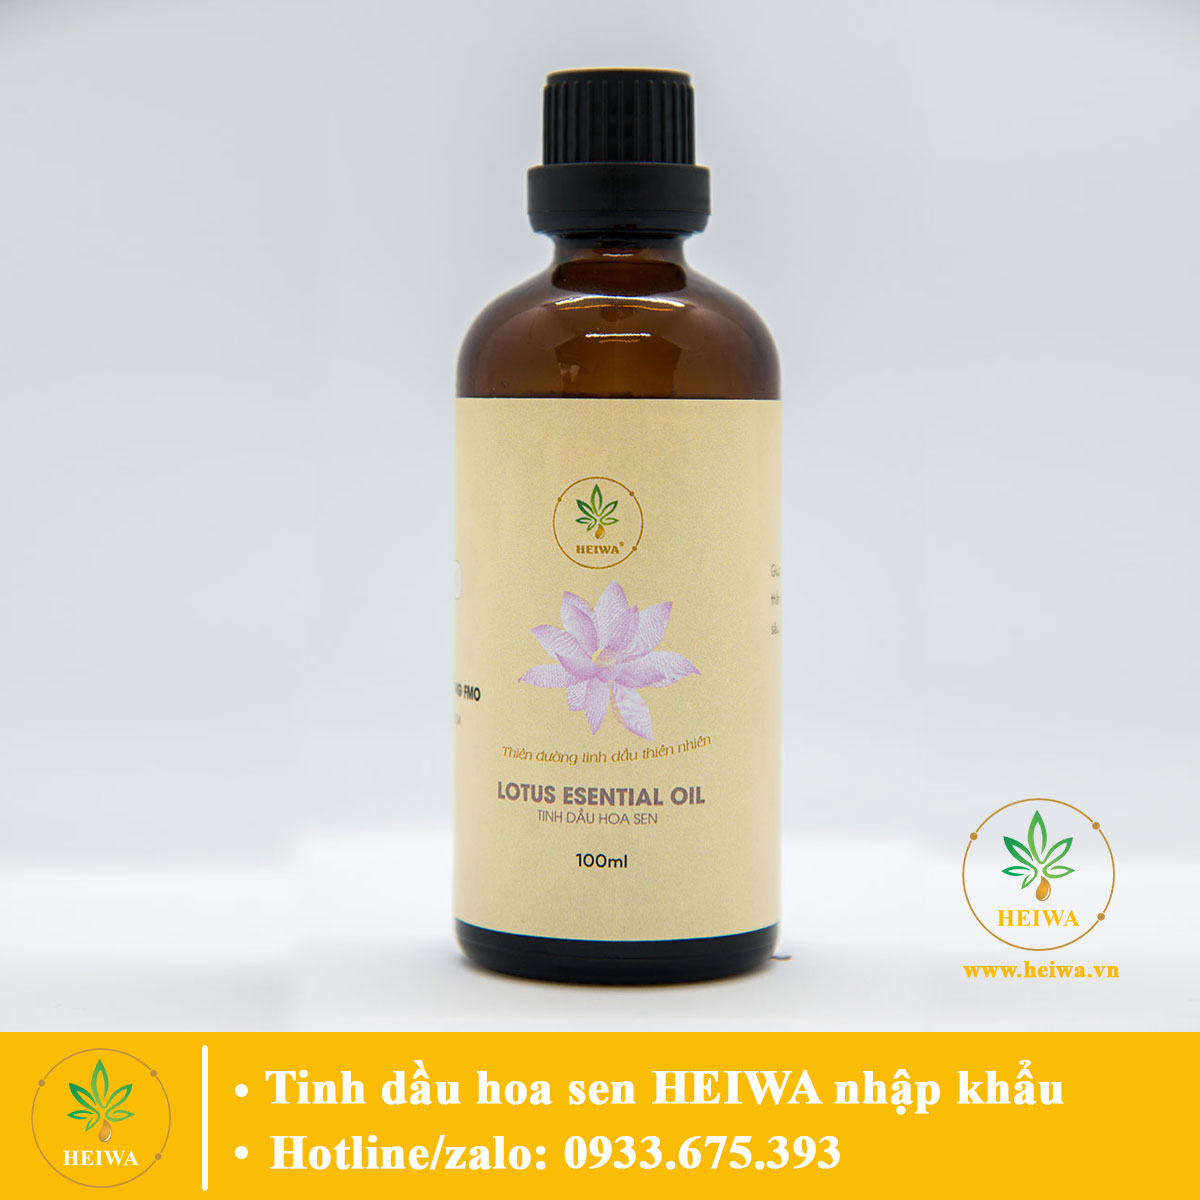 Tinh dầu Hoa sen thương hiệu HEIWA nhập khẩu Ấn Độ khử mùi, xông phòng